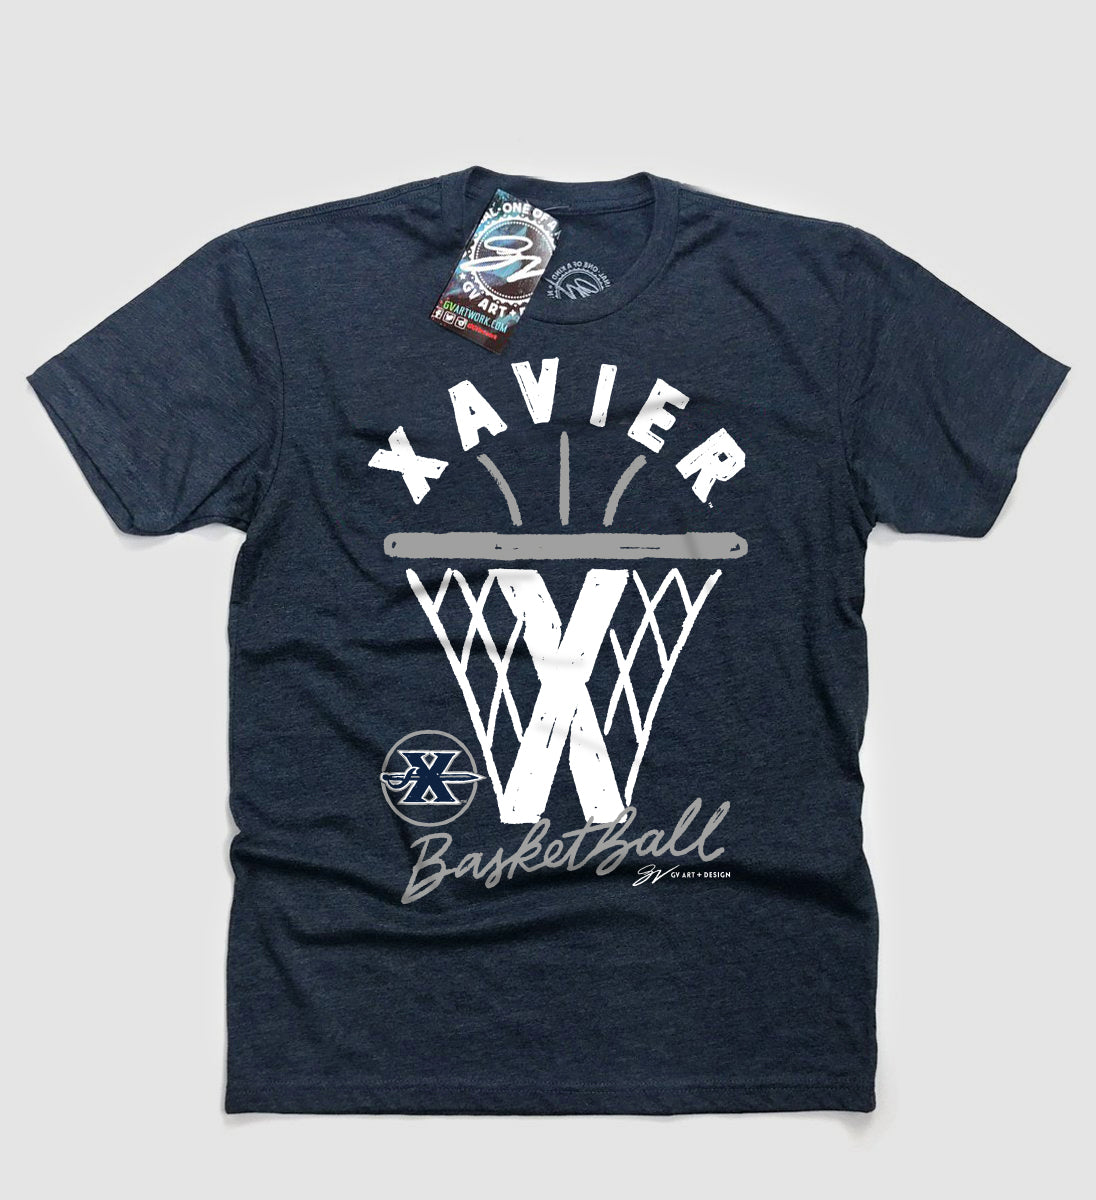 Xavier Basketball Net T shirt